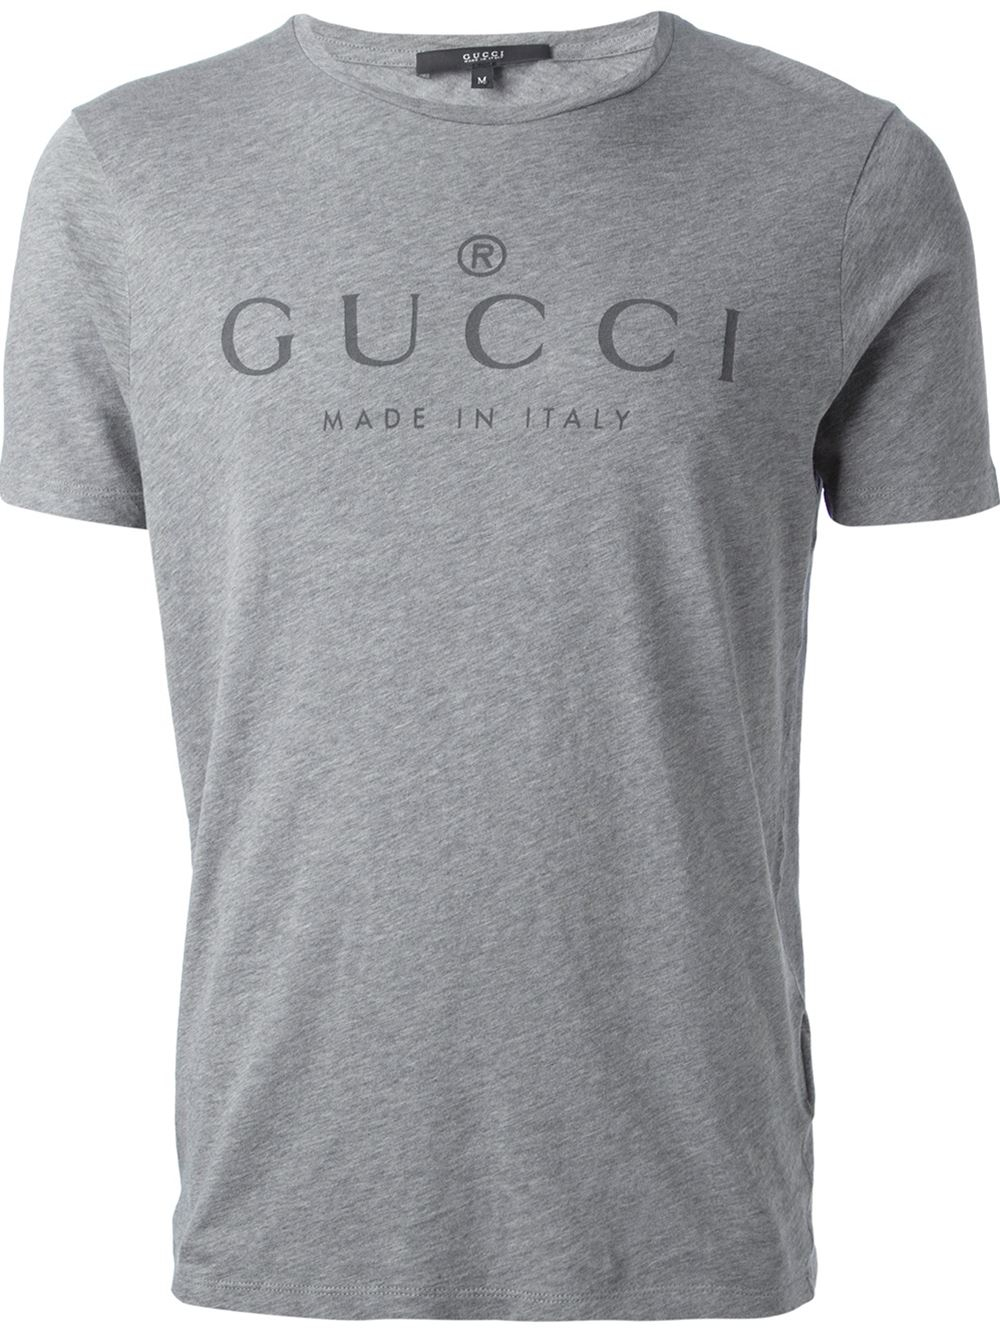 Gucci Logo Print Tshirt in Grey (Gray) for Men - Lyst